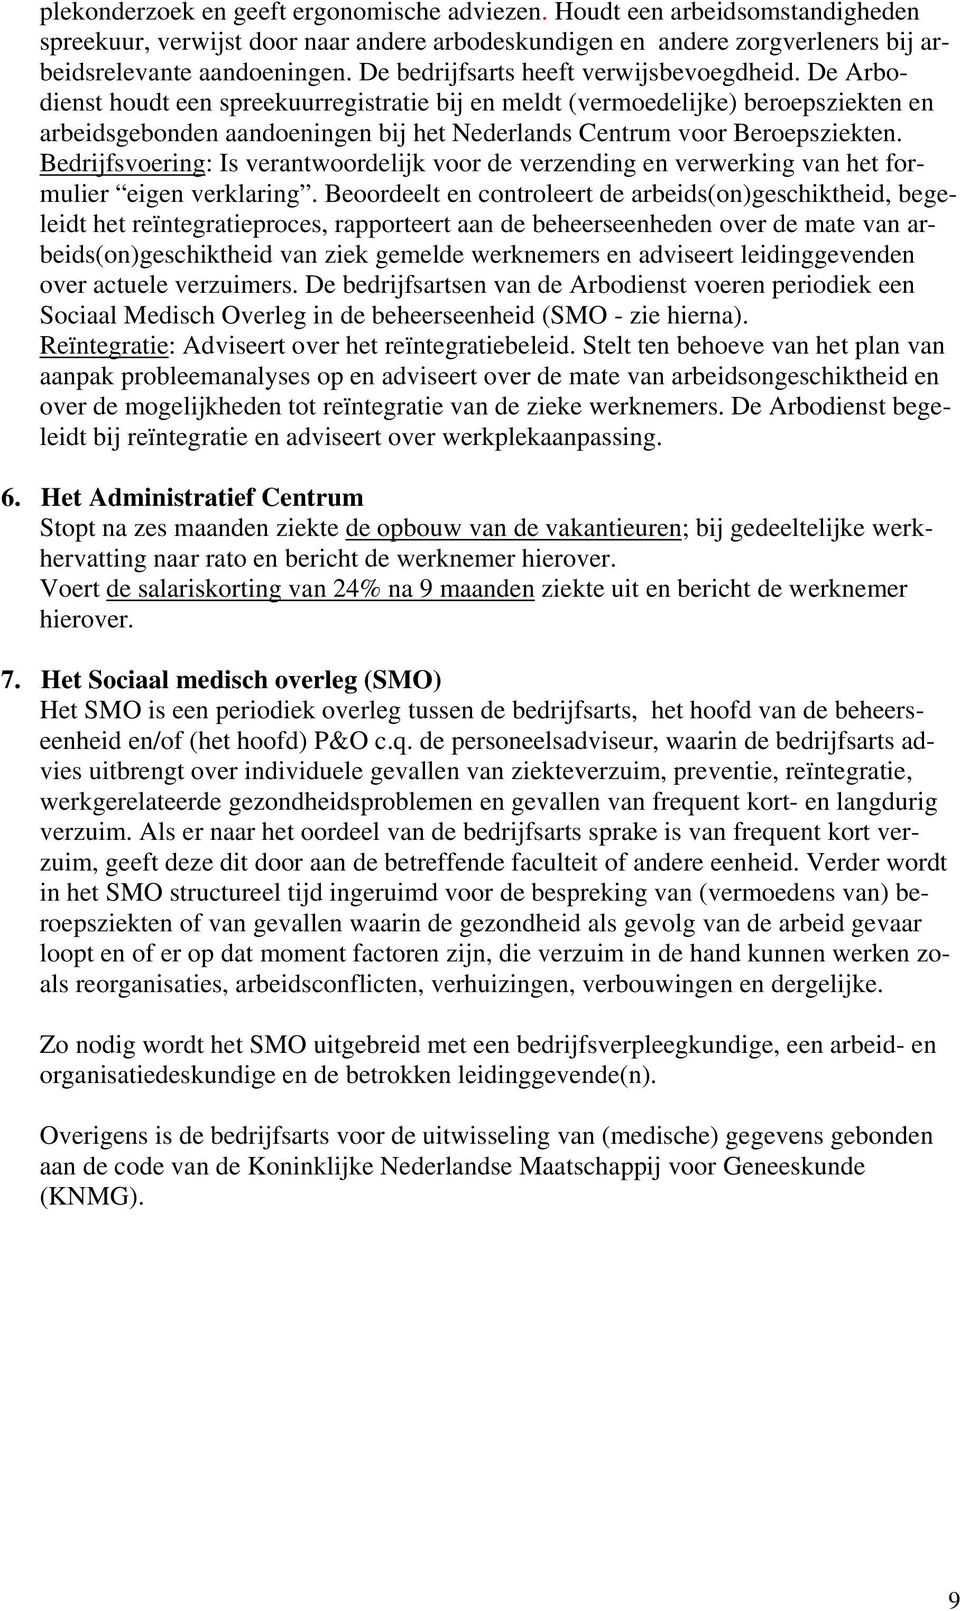 De Arbodienst houdt een spreekuurregistratie bij en meldt (vermoedelijke) beroepsziekten en arbeidsgebonden aandoeningen bij het Nederlands Centrum voor Beroepsziekten.